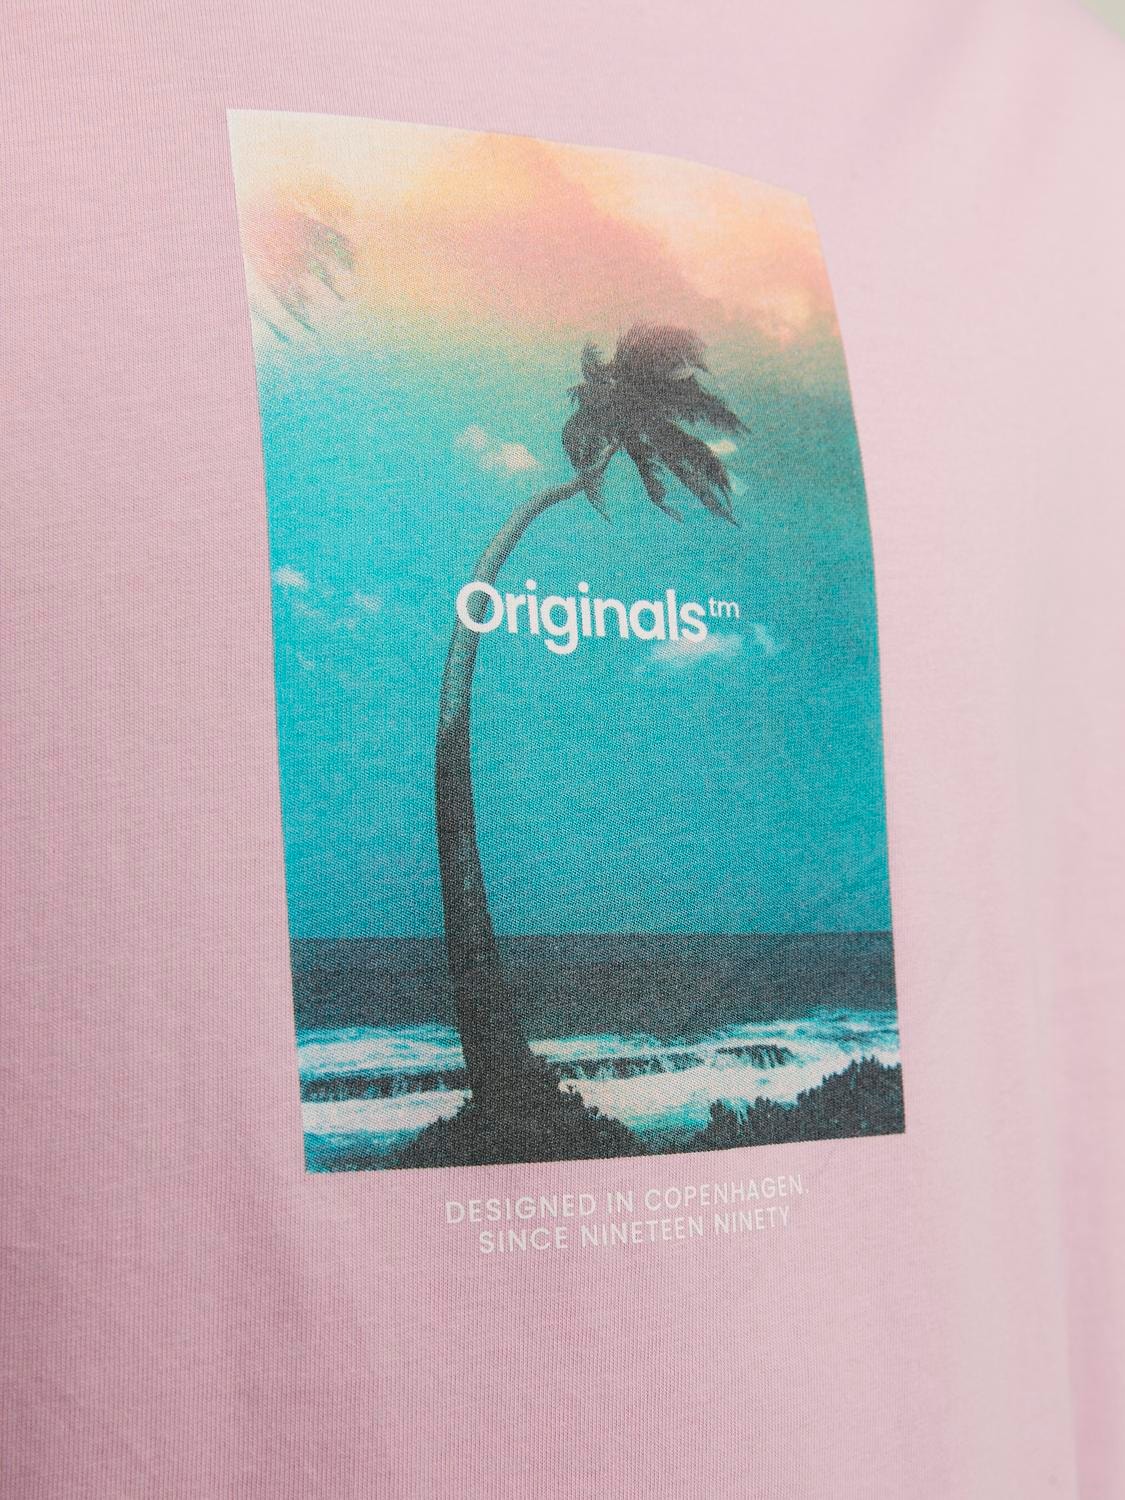 Jack & Jones Gedruckt Rundhals T-shirt -Pink Nectar - 12250421